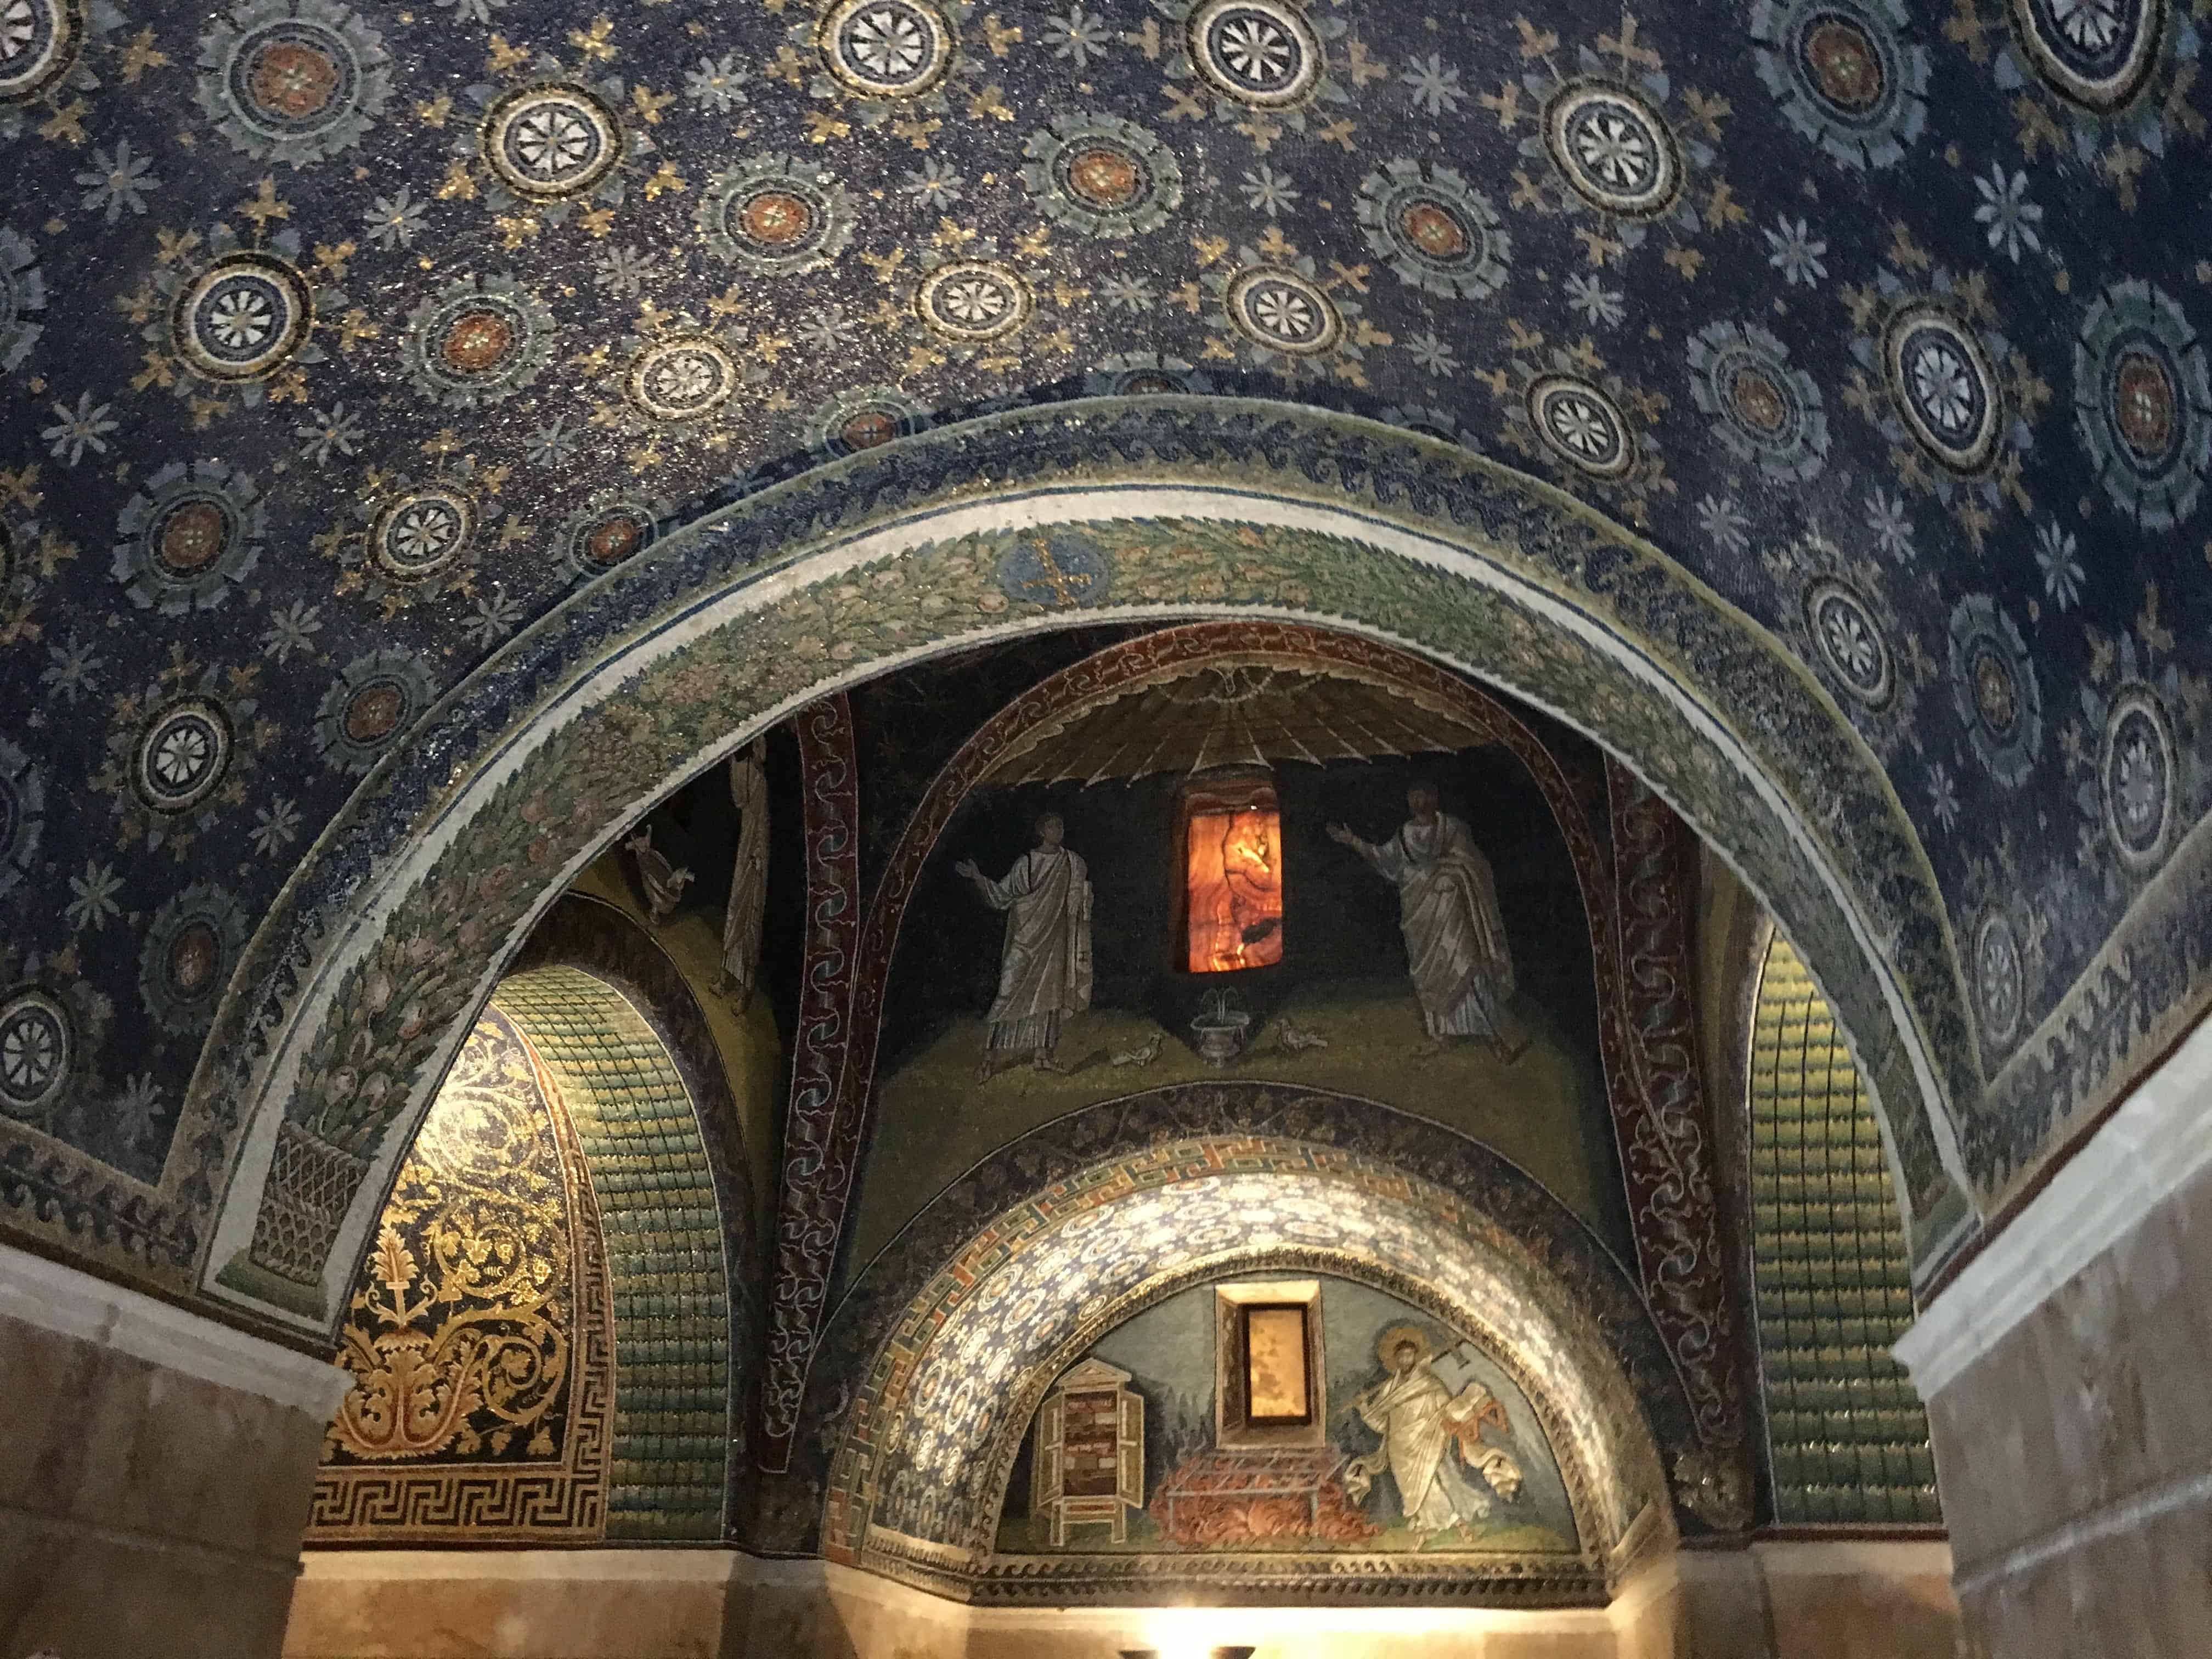 Dazzling interior of the Mausoleo di Galla Placidia, Ravenna, Italy